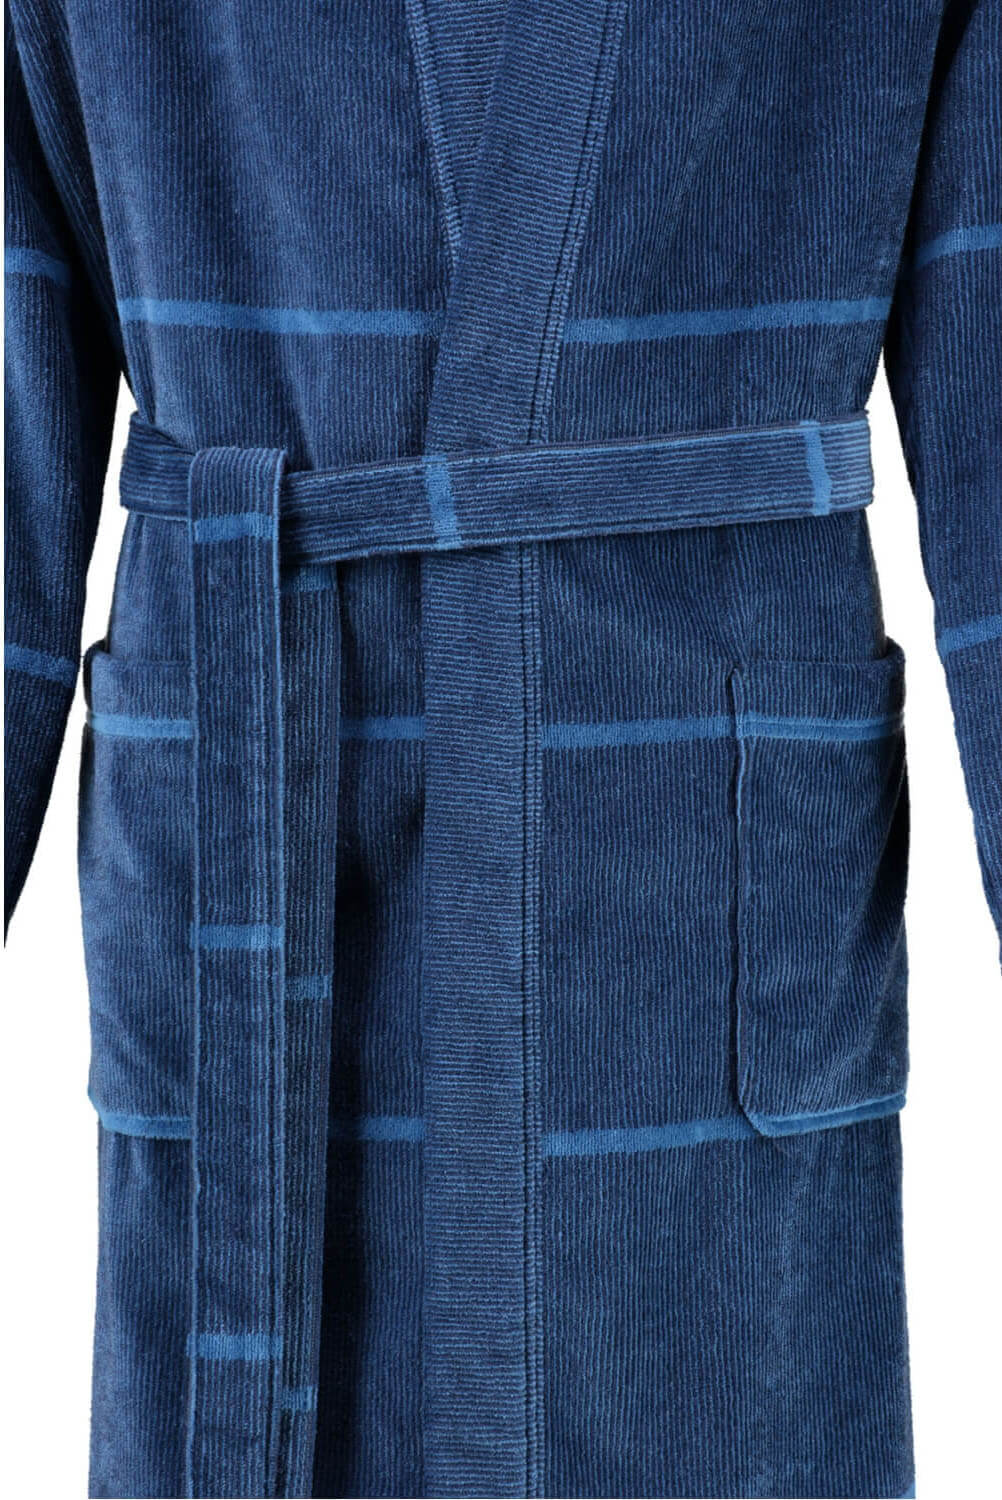 Мужской халат Cawo Kimono Blau ☞ Размер: 50